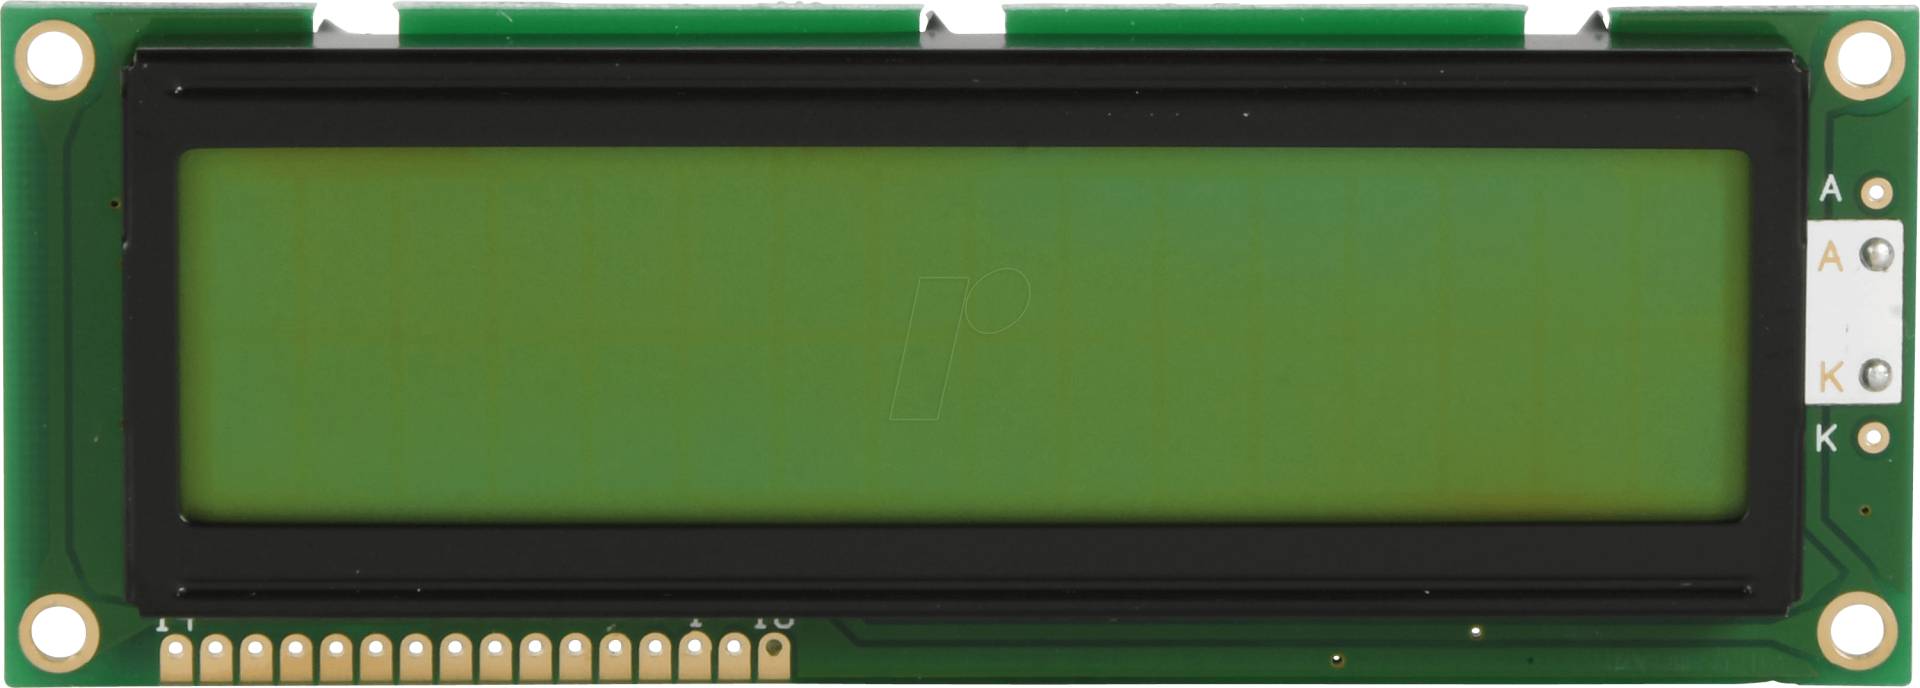 LCD-PM 2X16-10 B - LCD-Modul, 2x16, H:9,6mm, ge/gn, m.Bel. von DISPLAY ELEKTRONIK